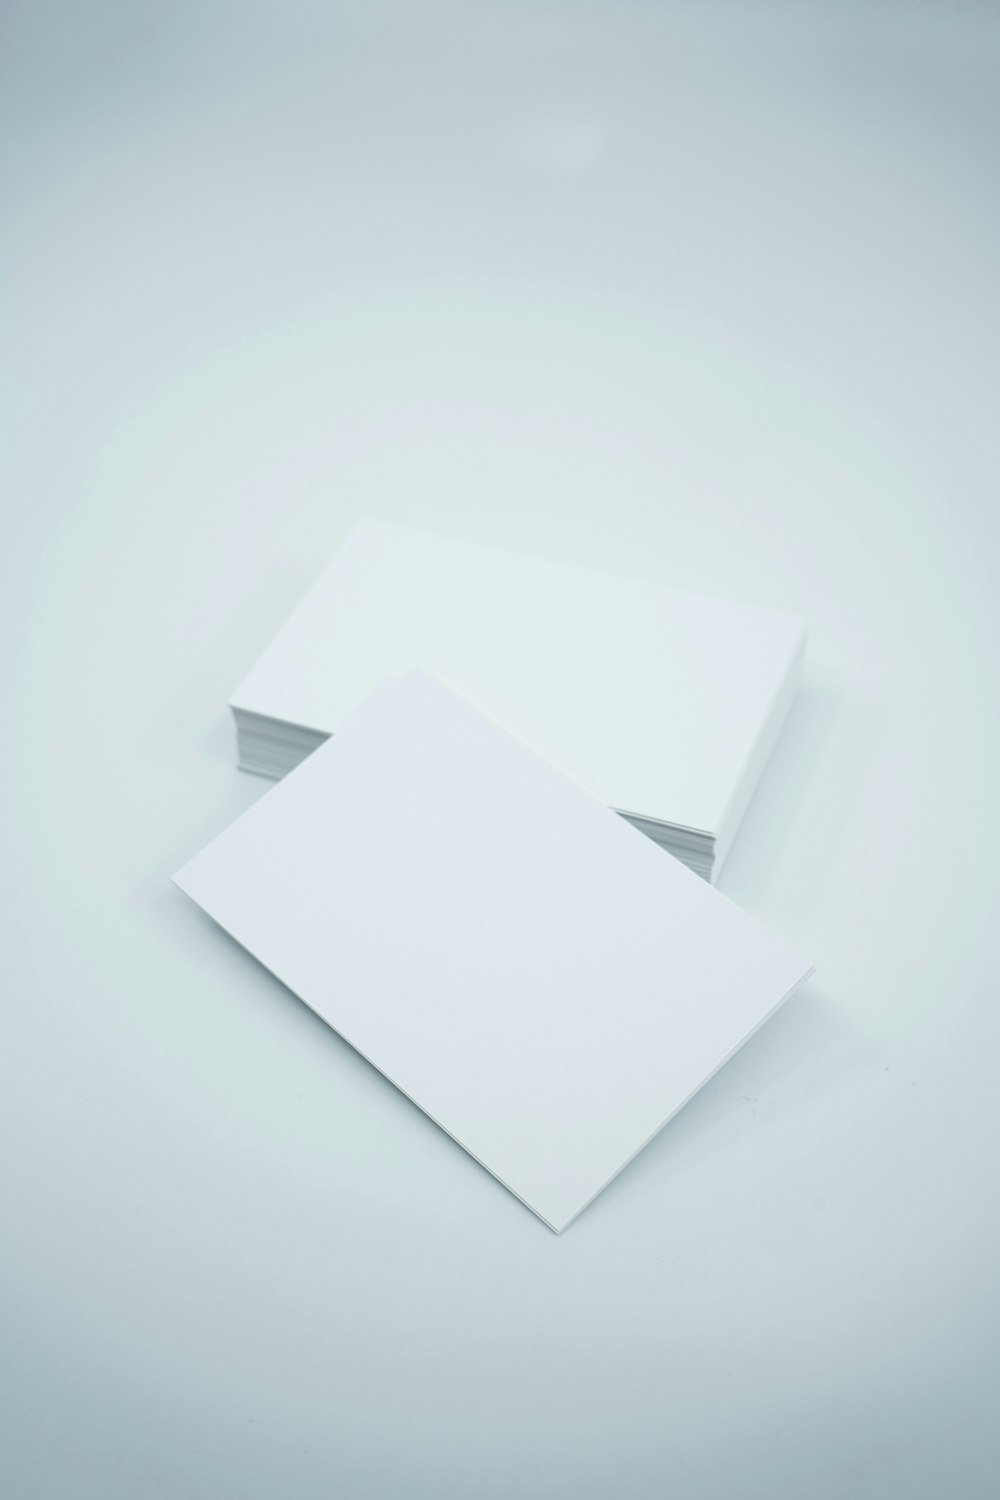 duas folhas de papel em branco em um fundo branco